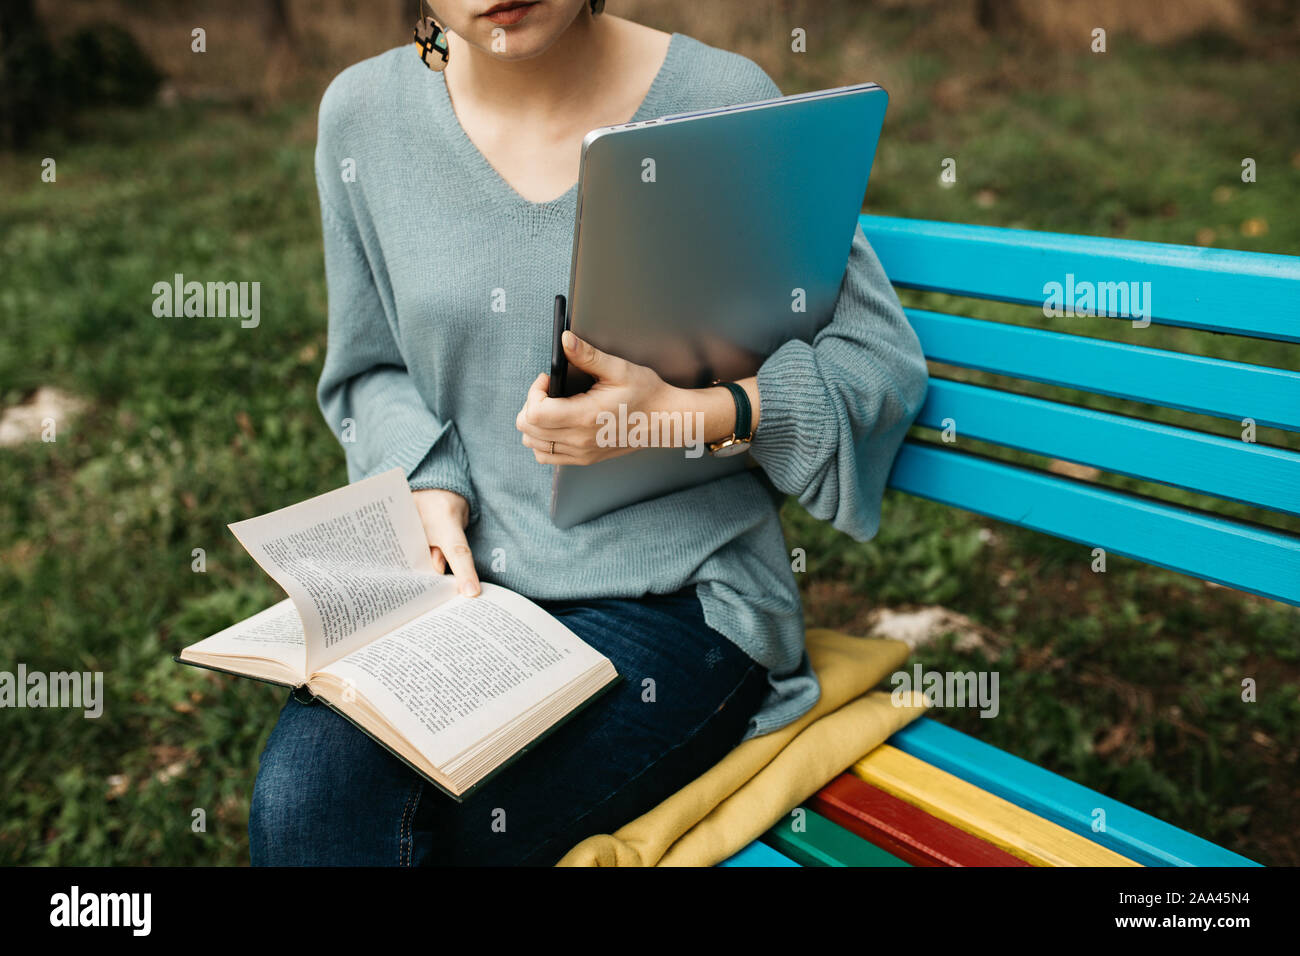 Portrait de femme assise sur le banc en bois coloré en parc. Elle est en train de lire un livre et la tenue d'ordinateur portable et téléphone mobile. Travail freelance concept. Banque D'Images